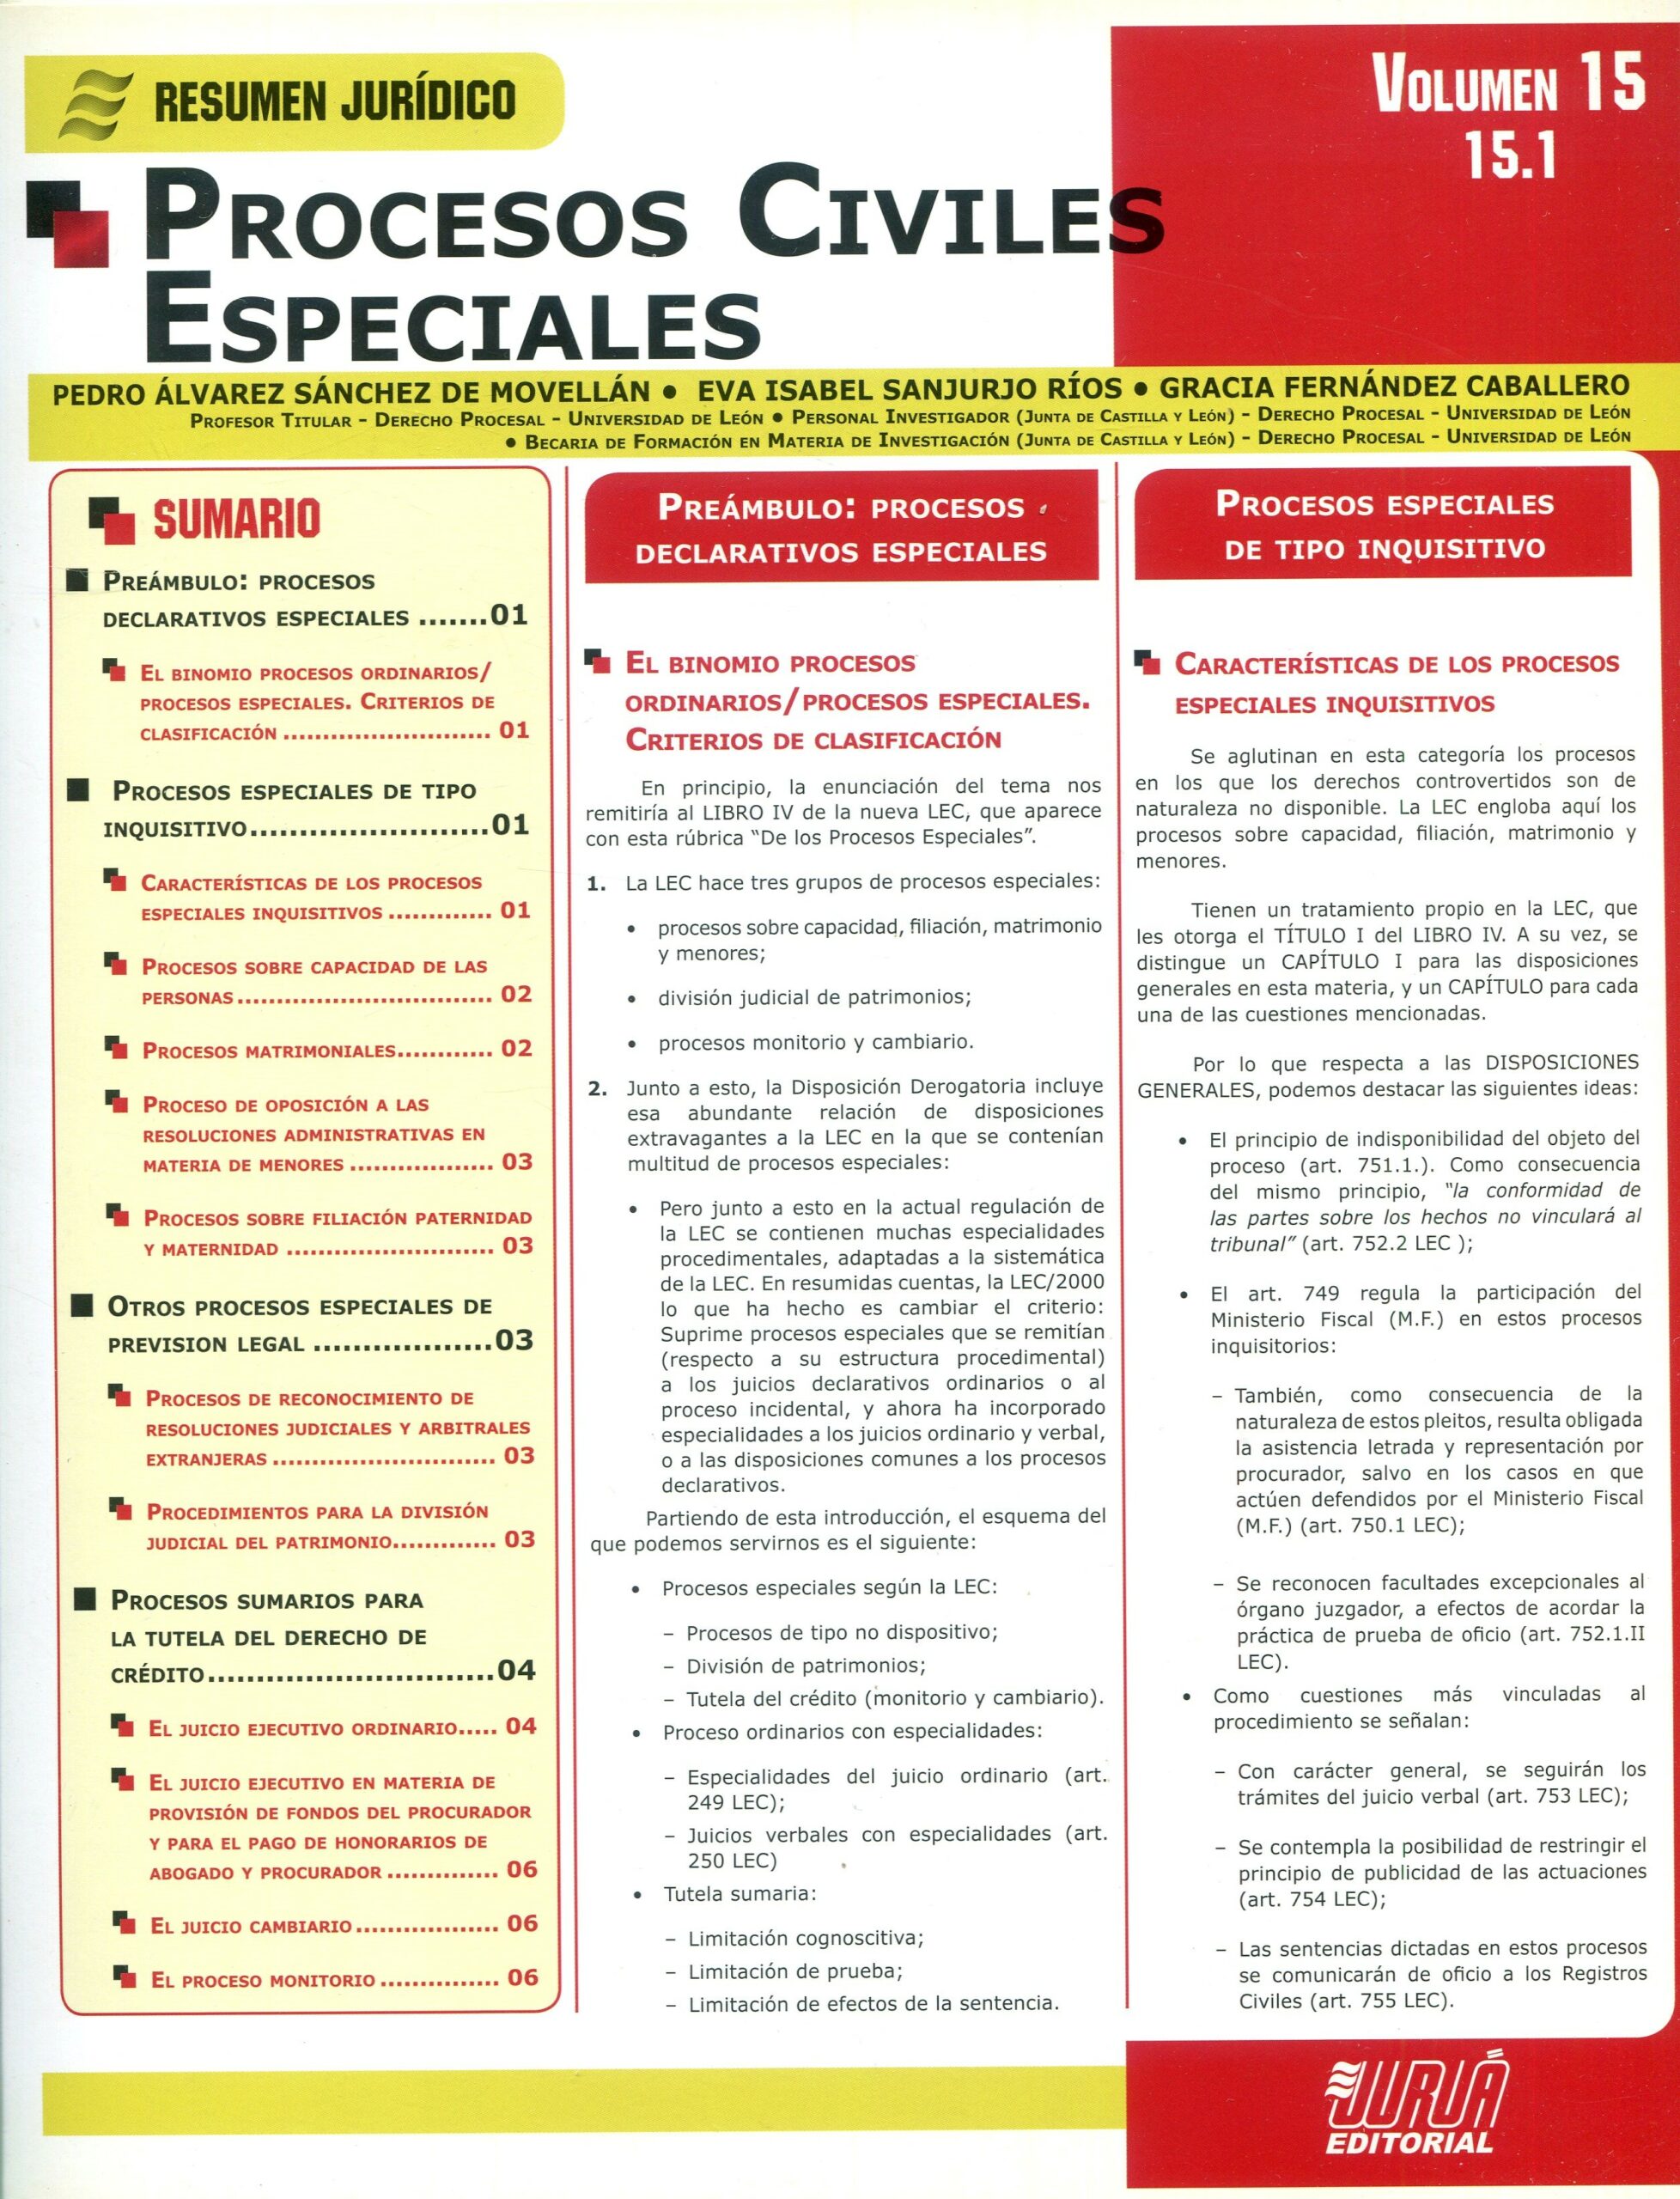 Procesos Civiles Especiales Vol. 15.1 9789897120534